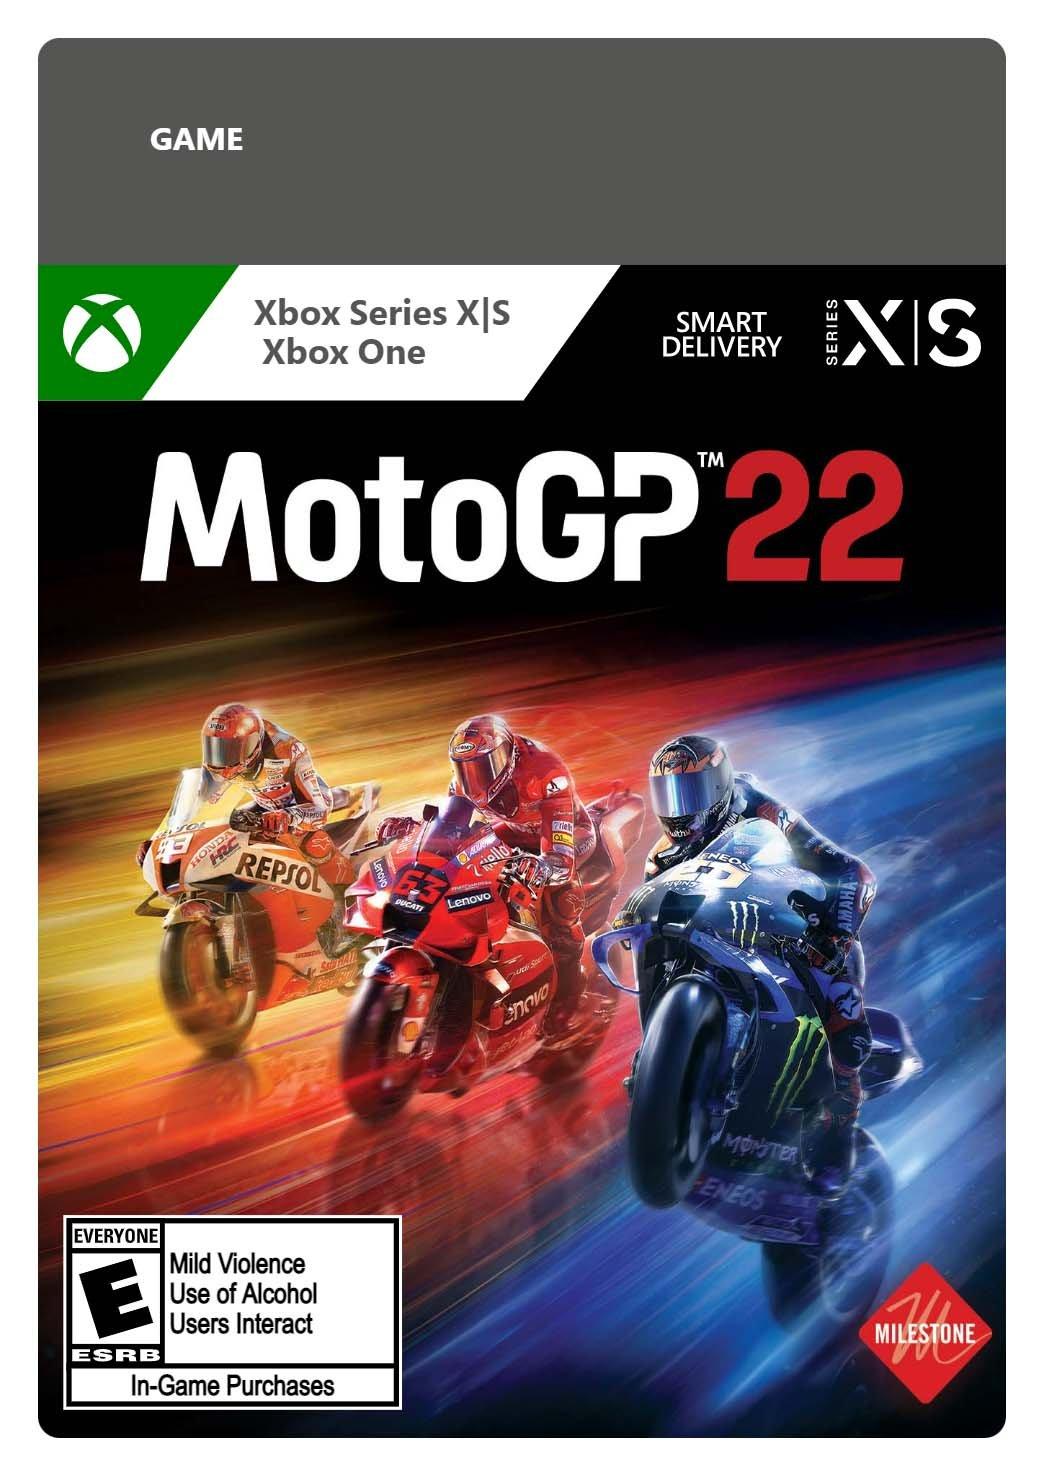 MotoGP 22 - Xbox Series X